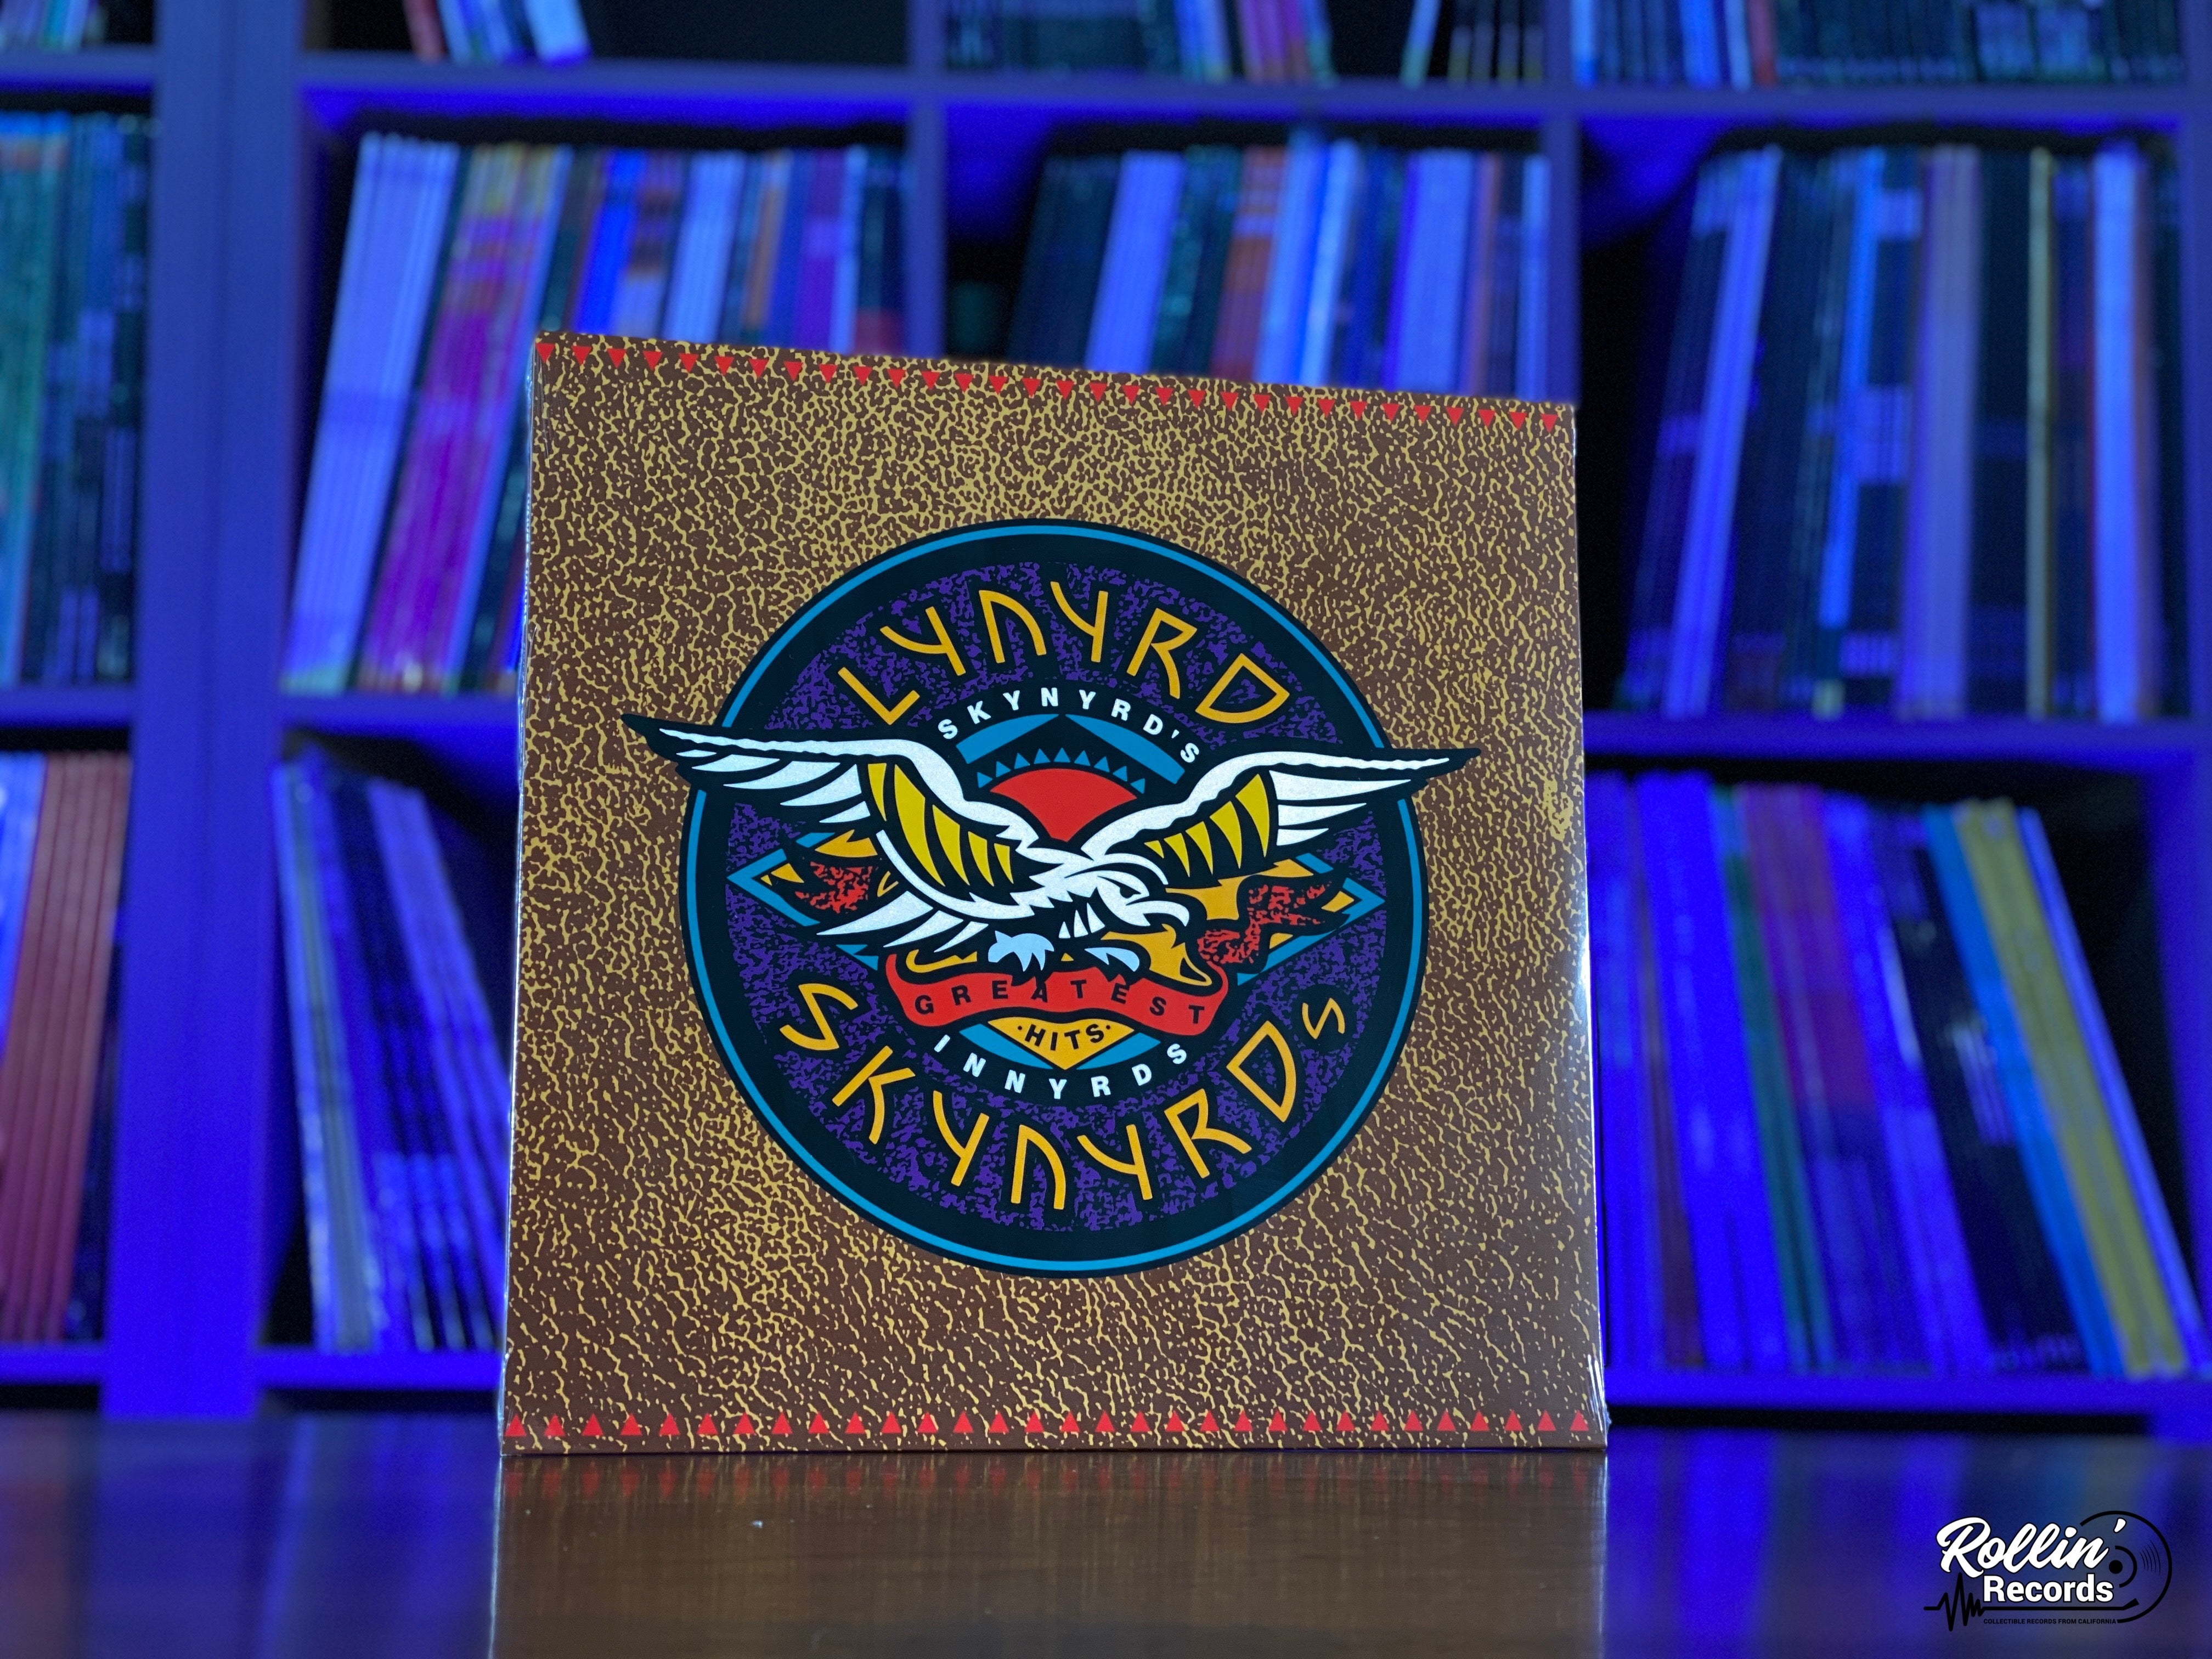 Lynyrd Skynyrd - Skynyrd's Innyrds – Rollin' Records